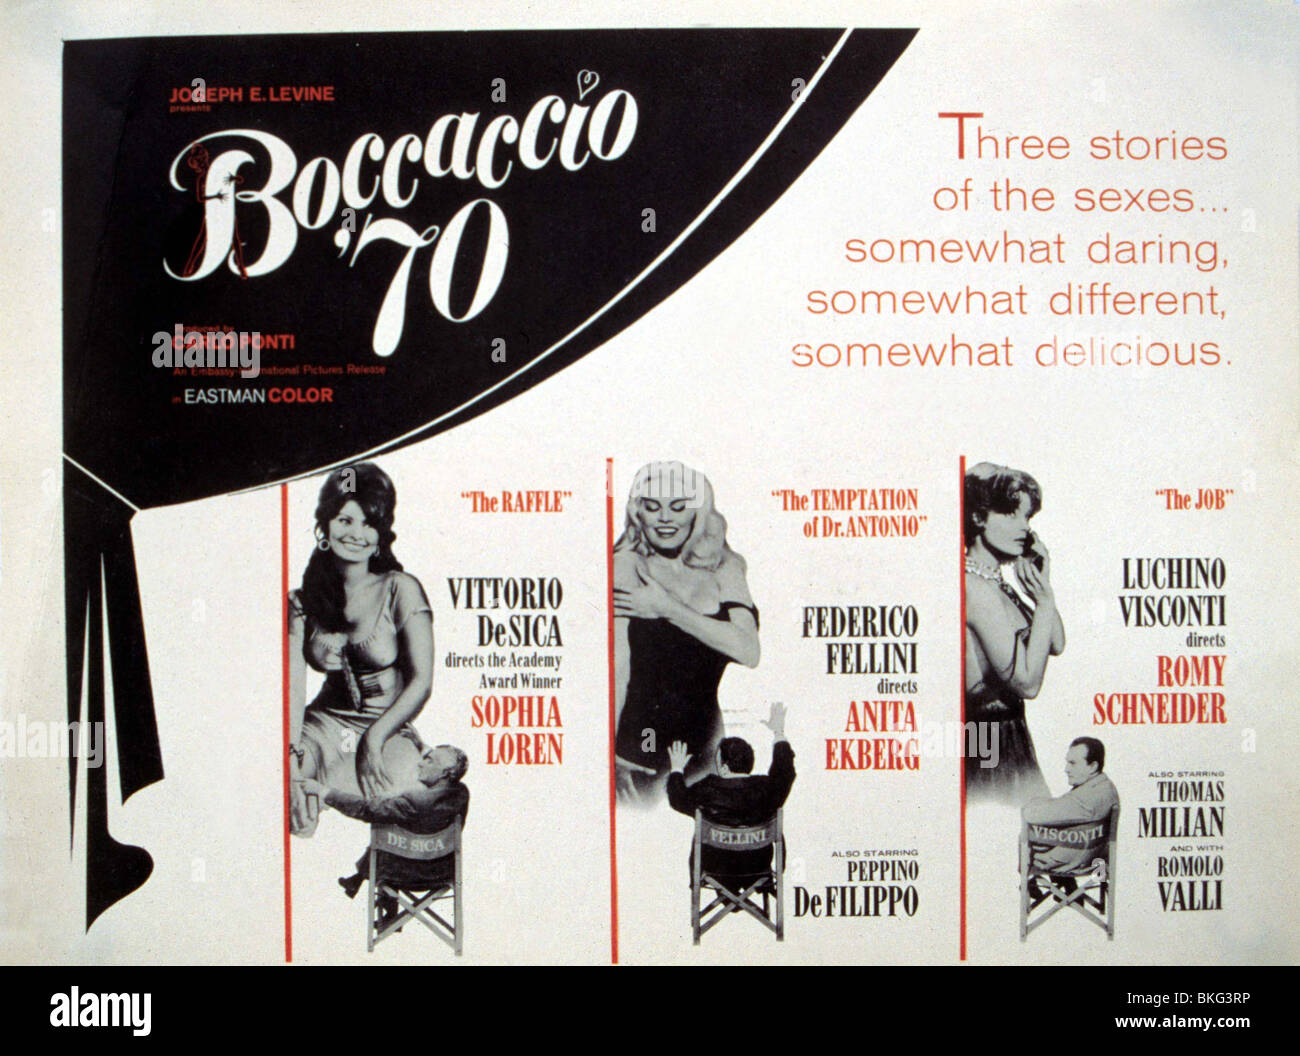 BOCCACCIO '70 -1962 POSTER Stock Photo